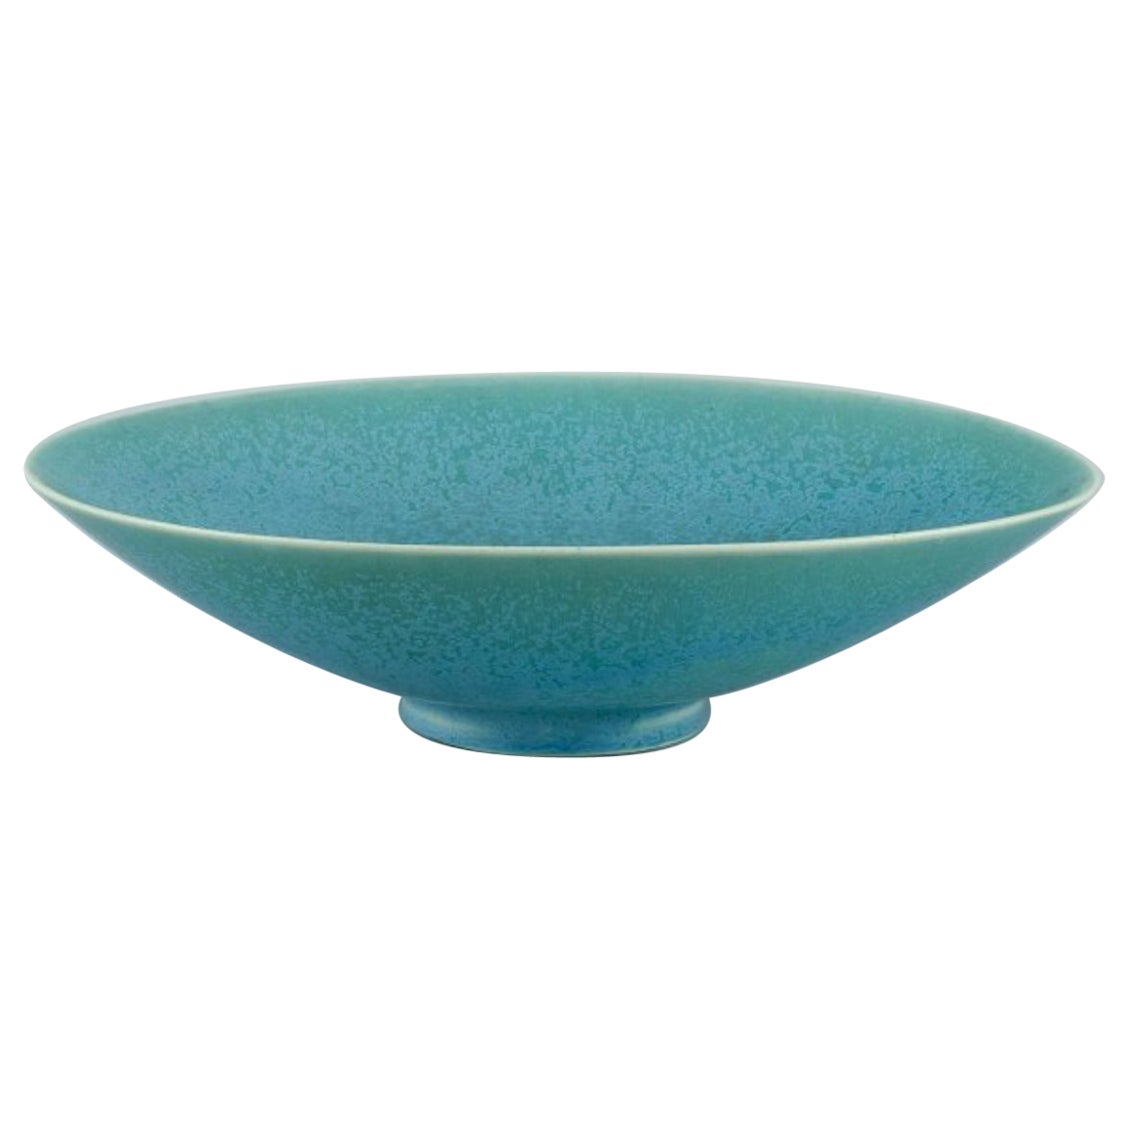 Berndt Friberg for Gustavsberg, Sweden. Oval ceramic bowl in eggshell glaze